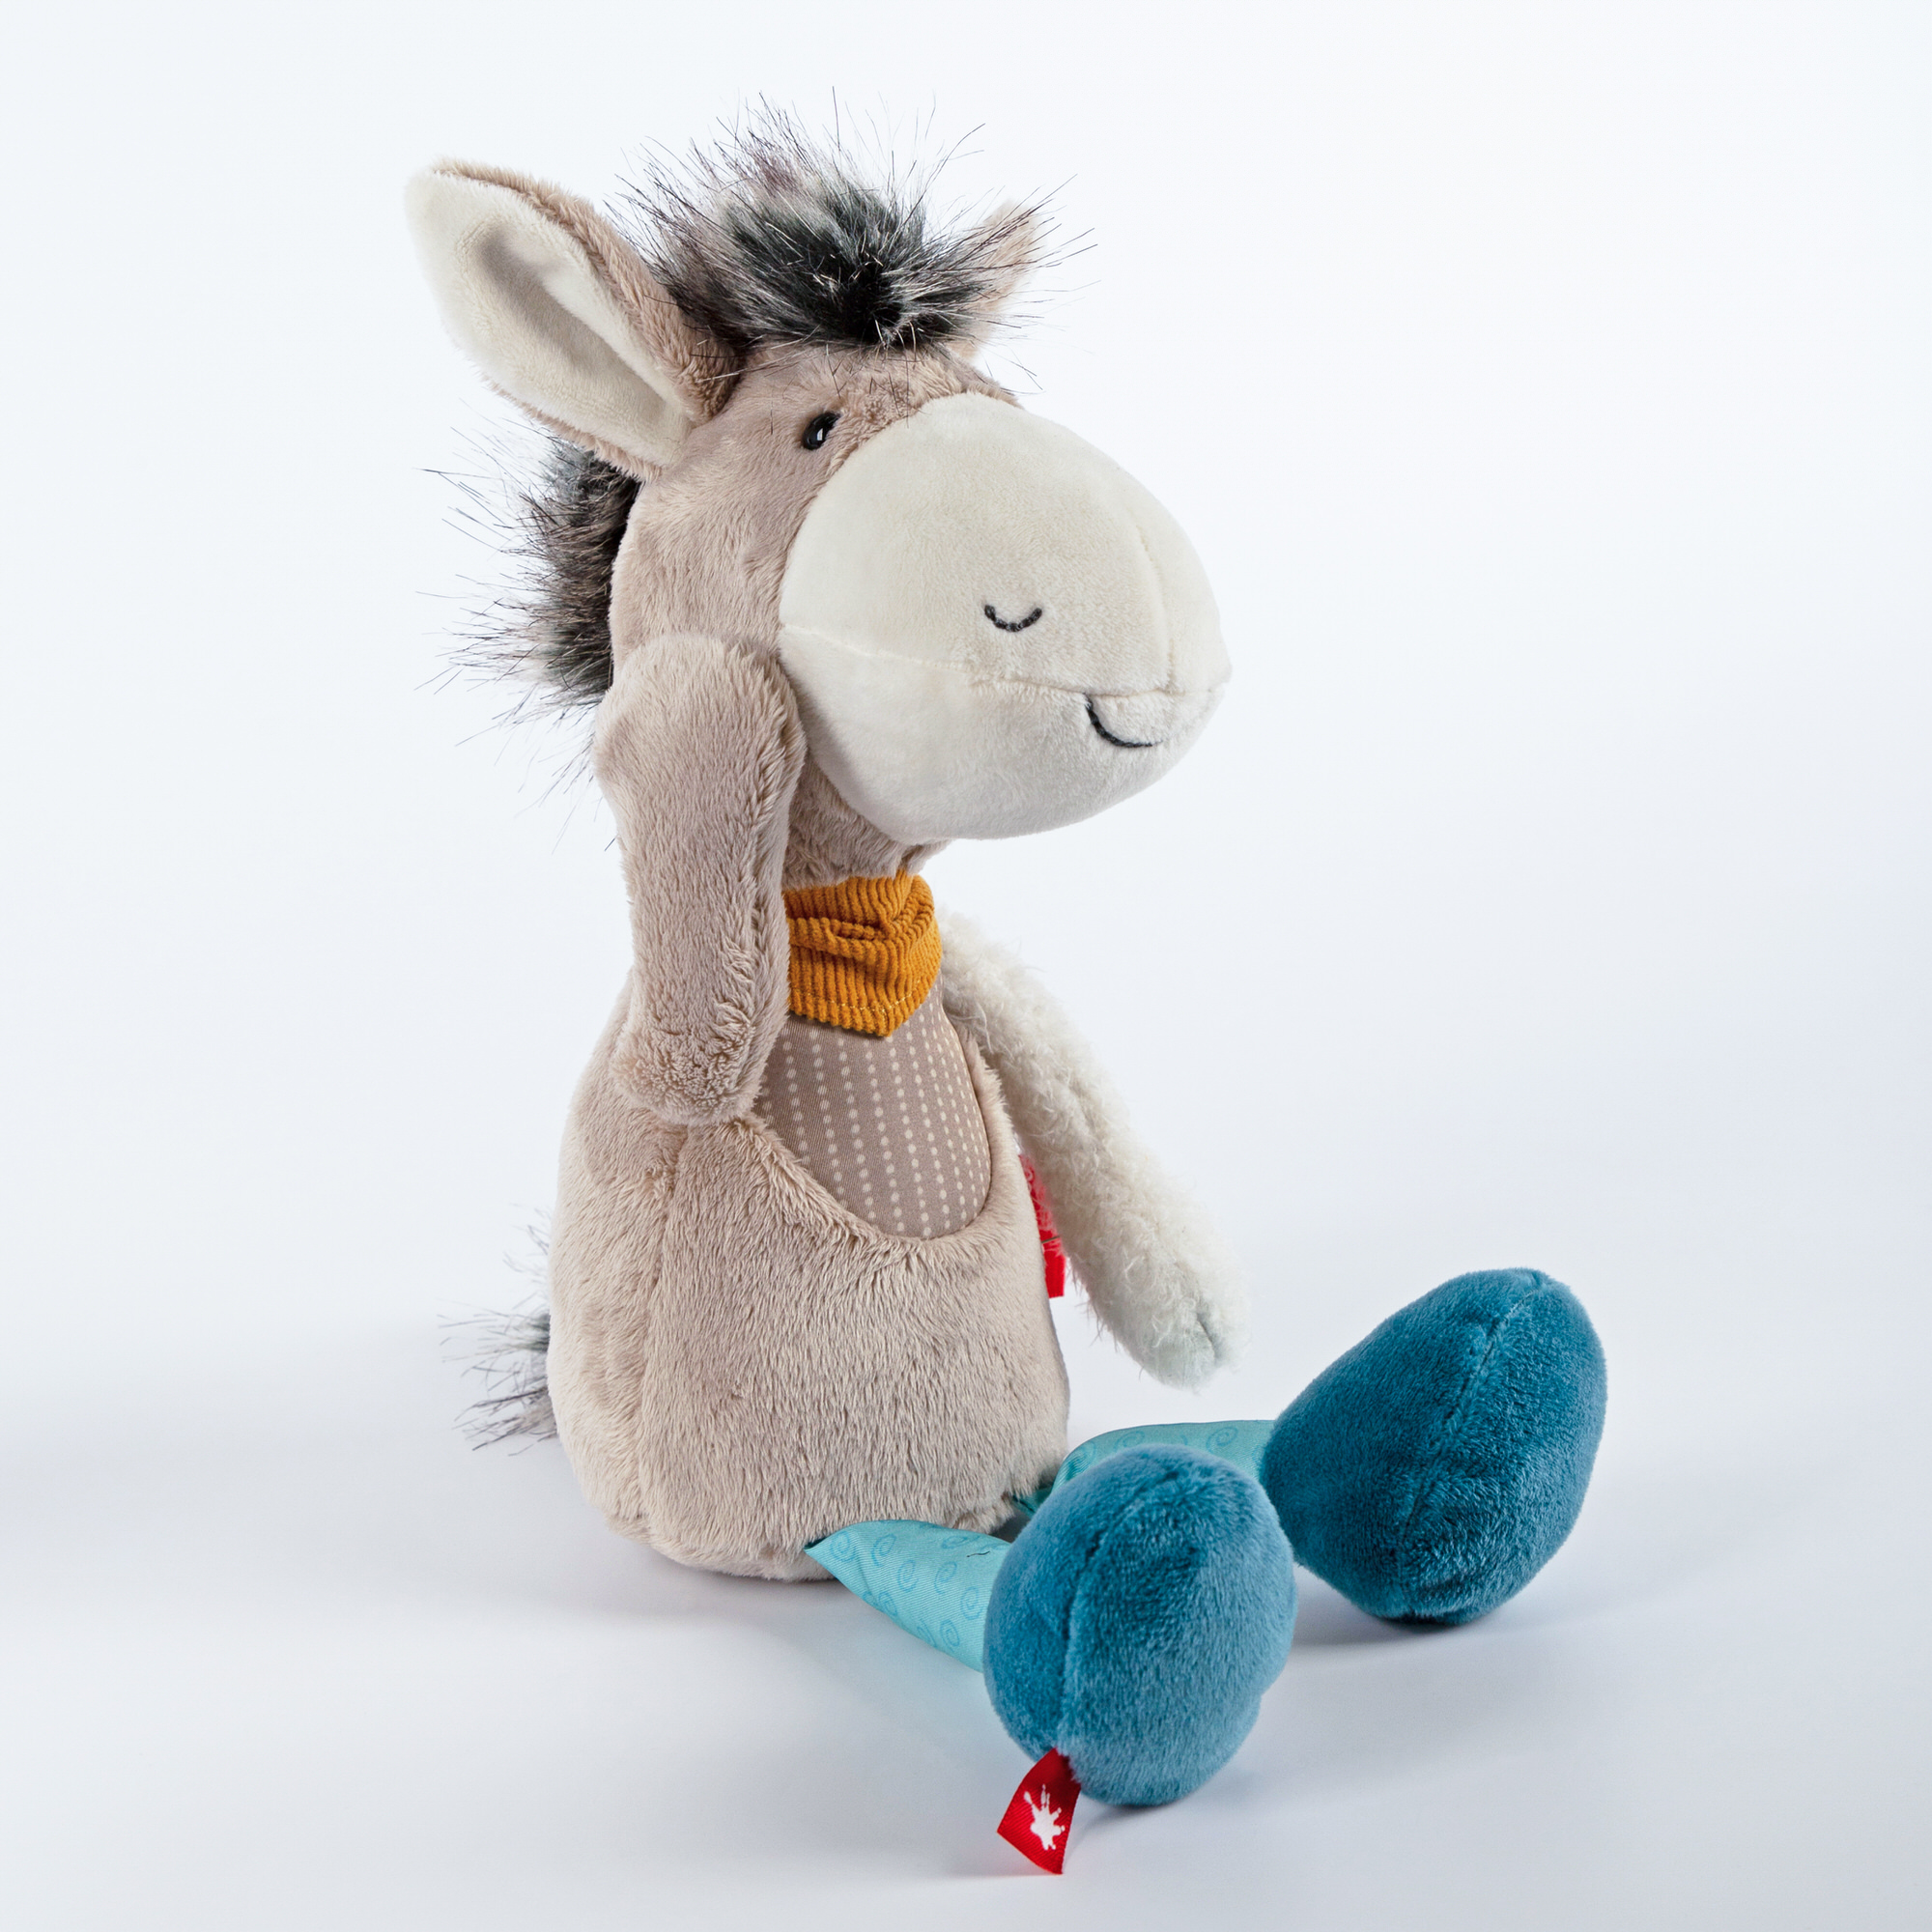 Patchwork soft toy donkey